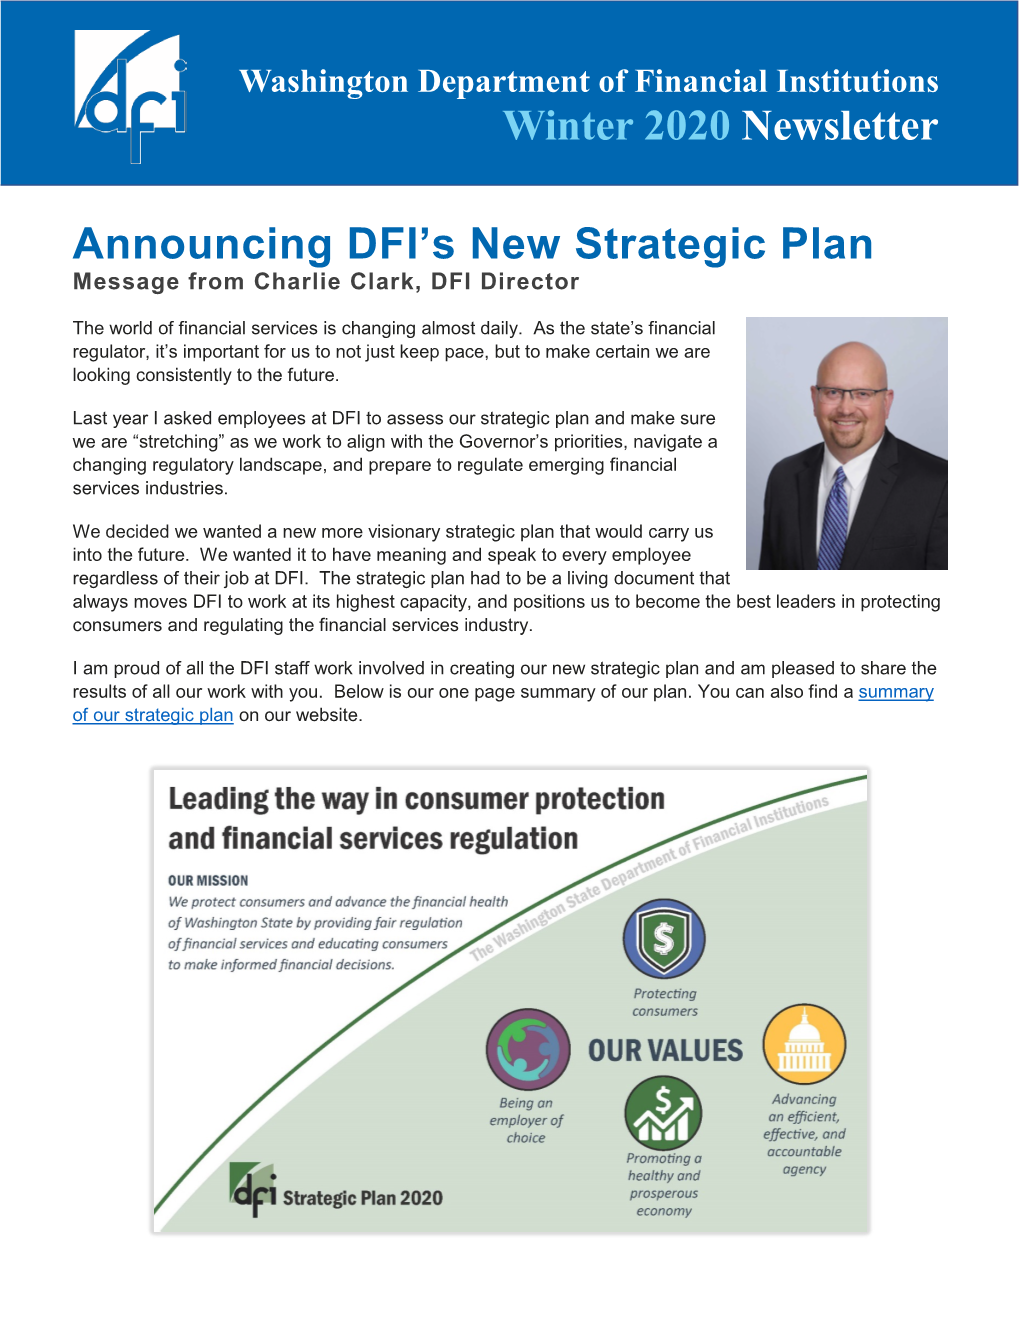 Winter 2020 DFI Newsletter